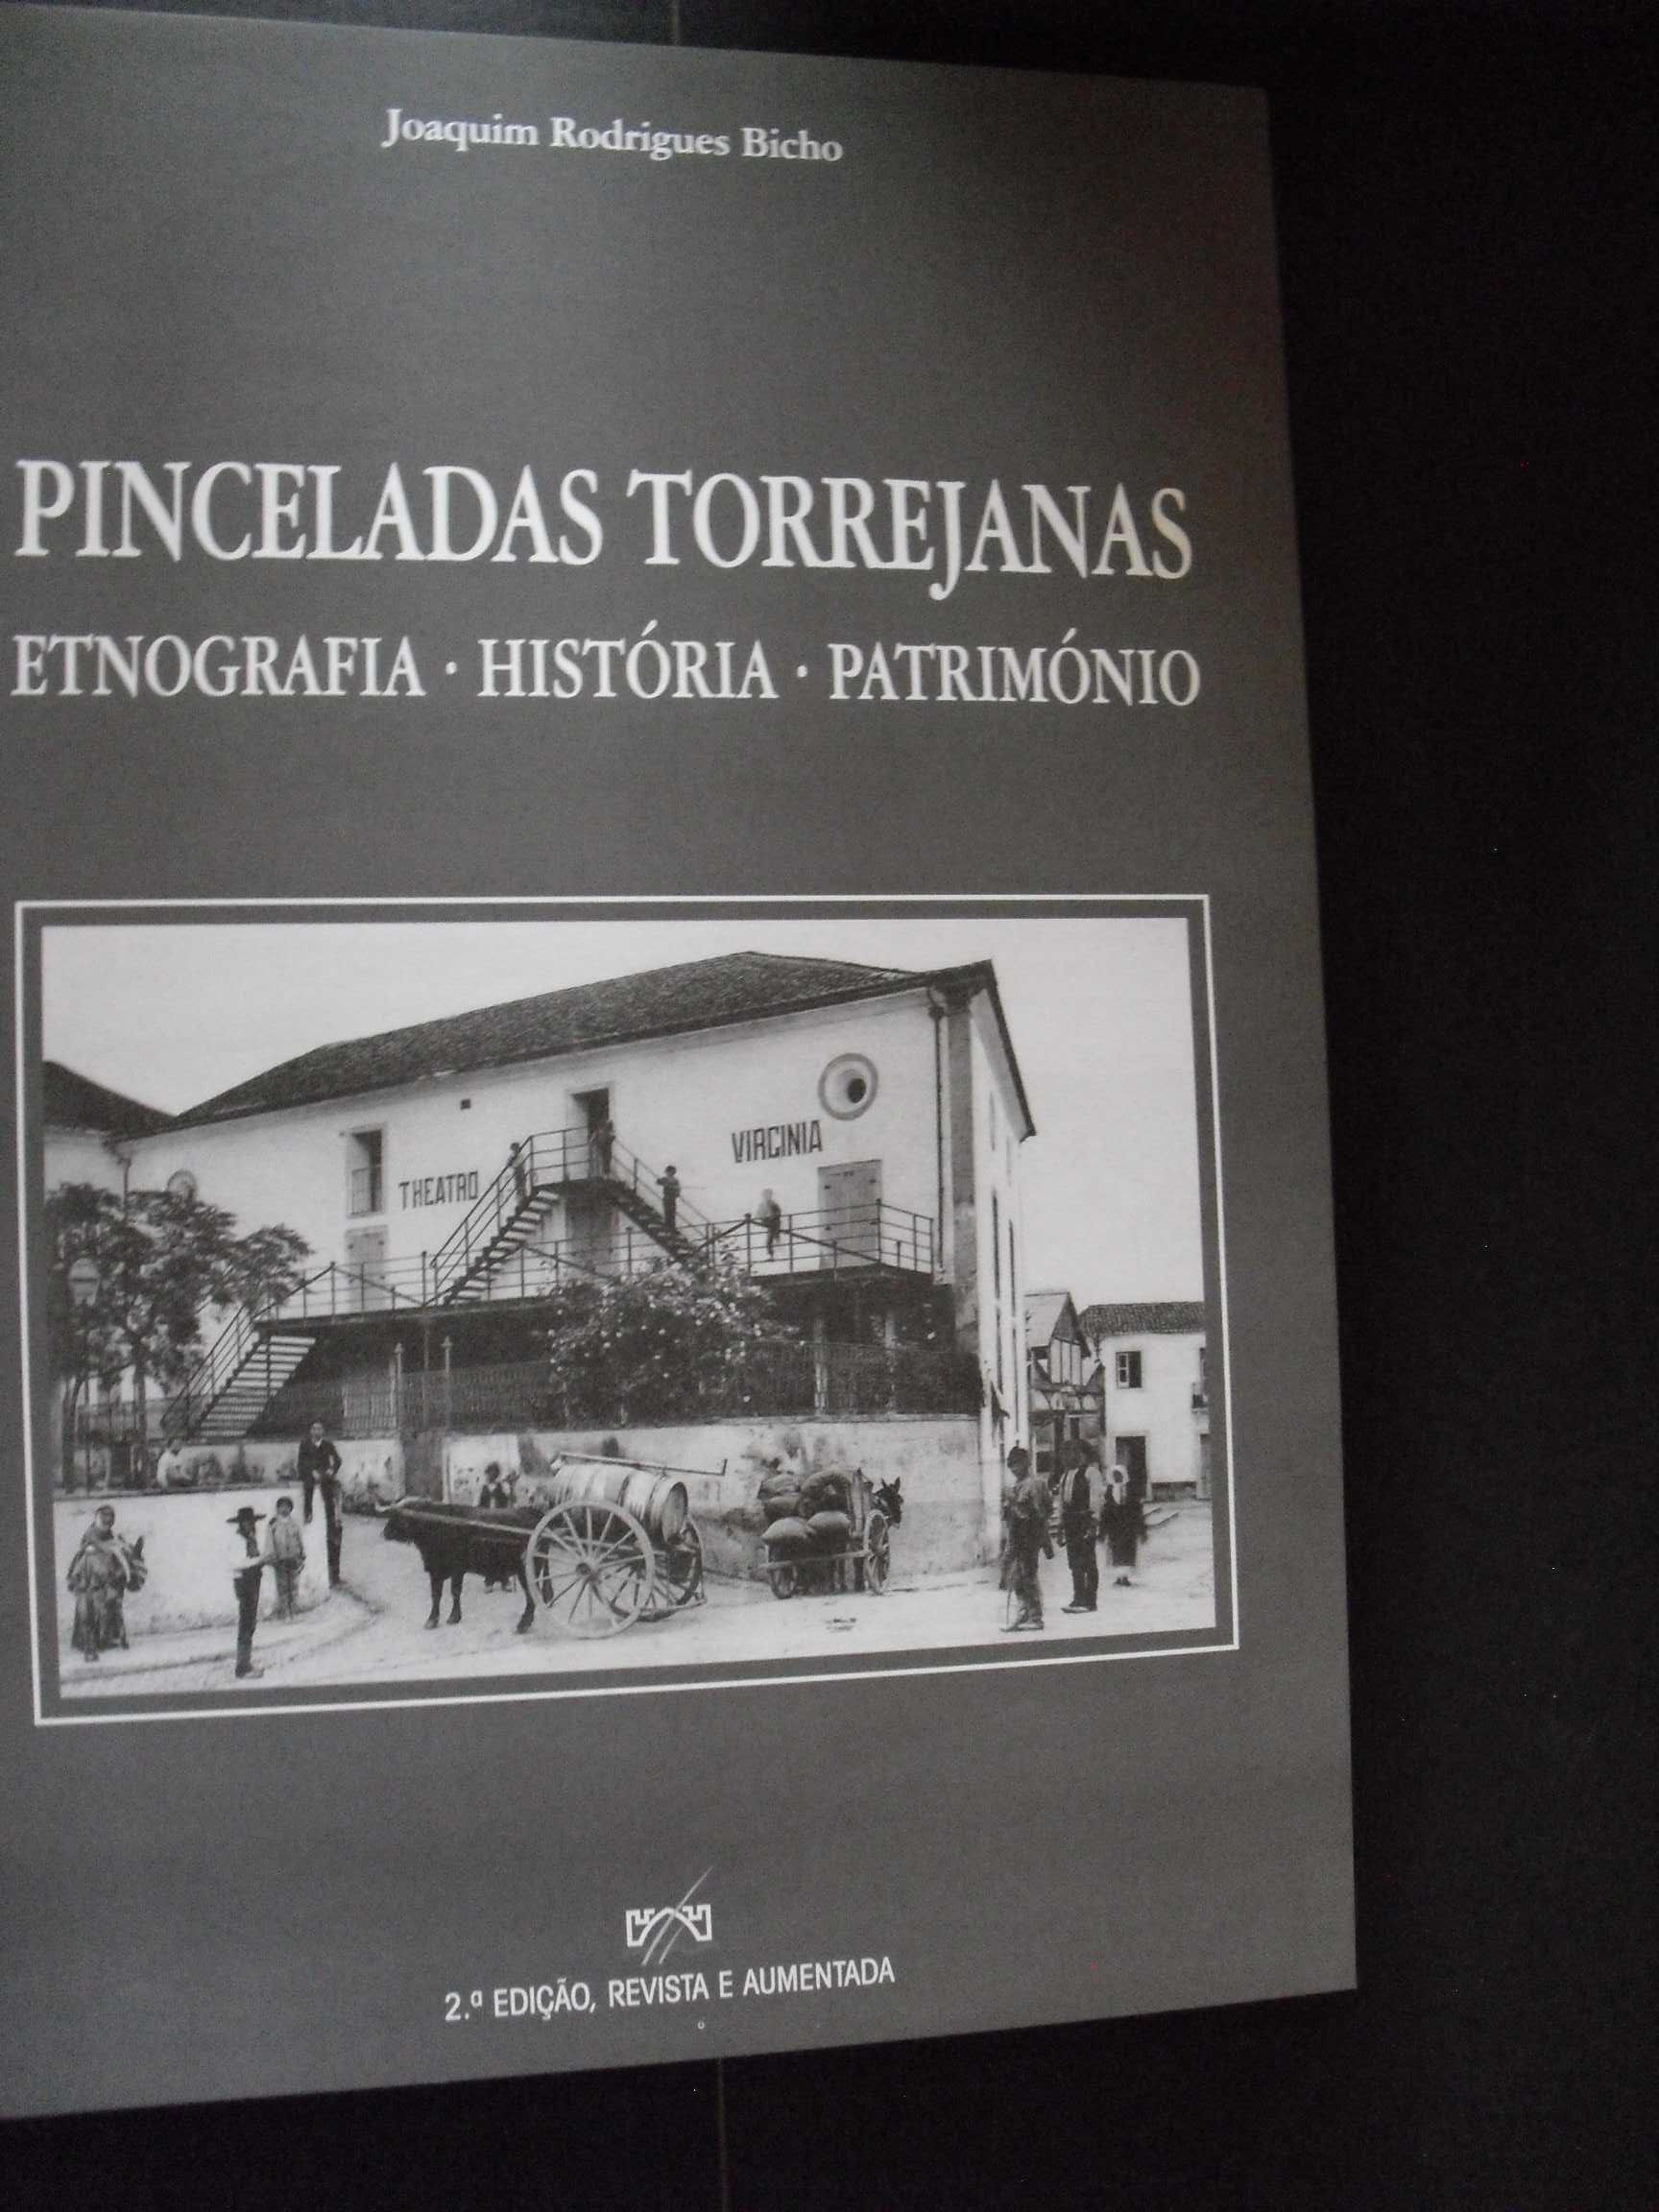 Bicho (Joaquim Rodriges);Pinceladas Torrejanas-Etnografia-História